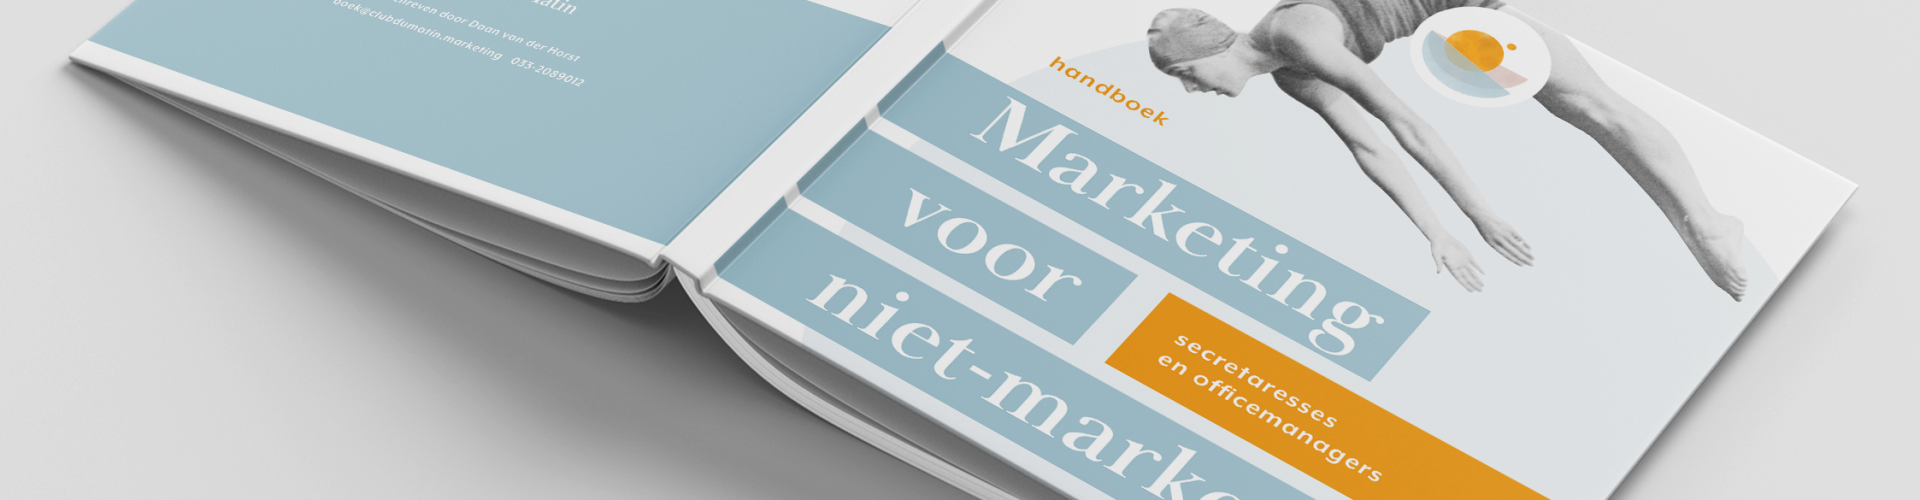 Handboek | Marketing voor niet-marketeers | Club du Matin | auteur: Daan van der Horst